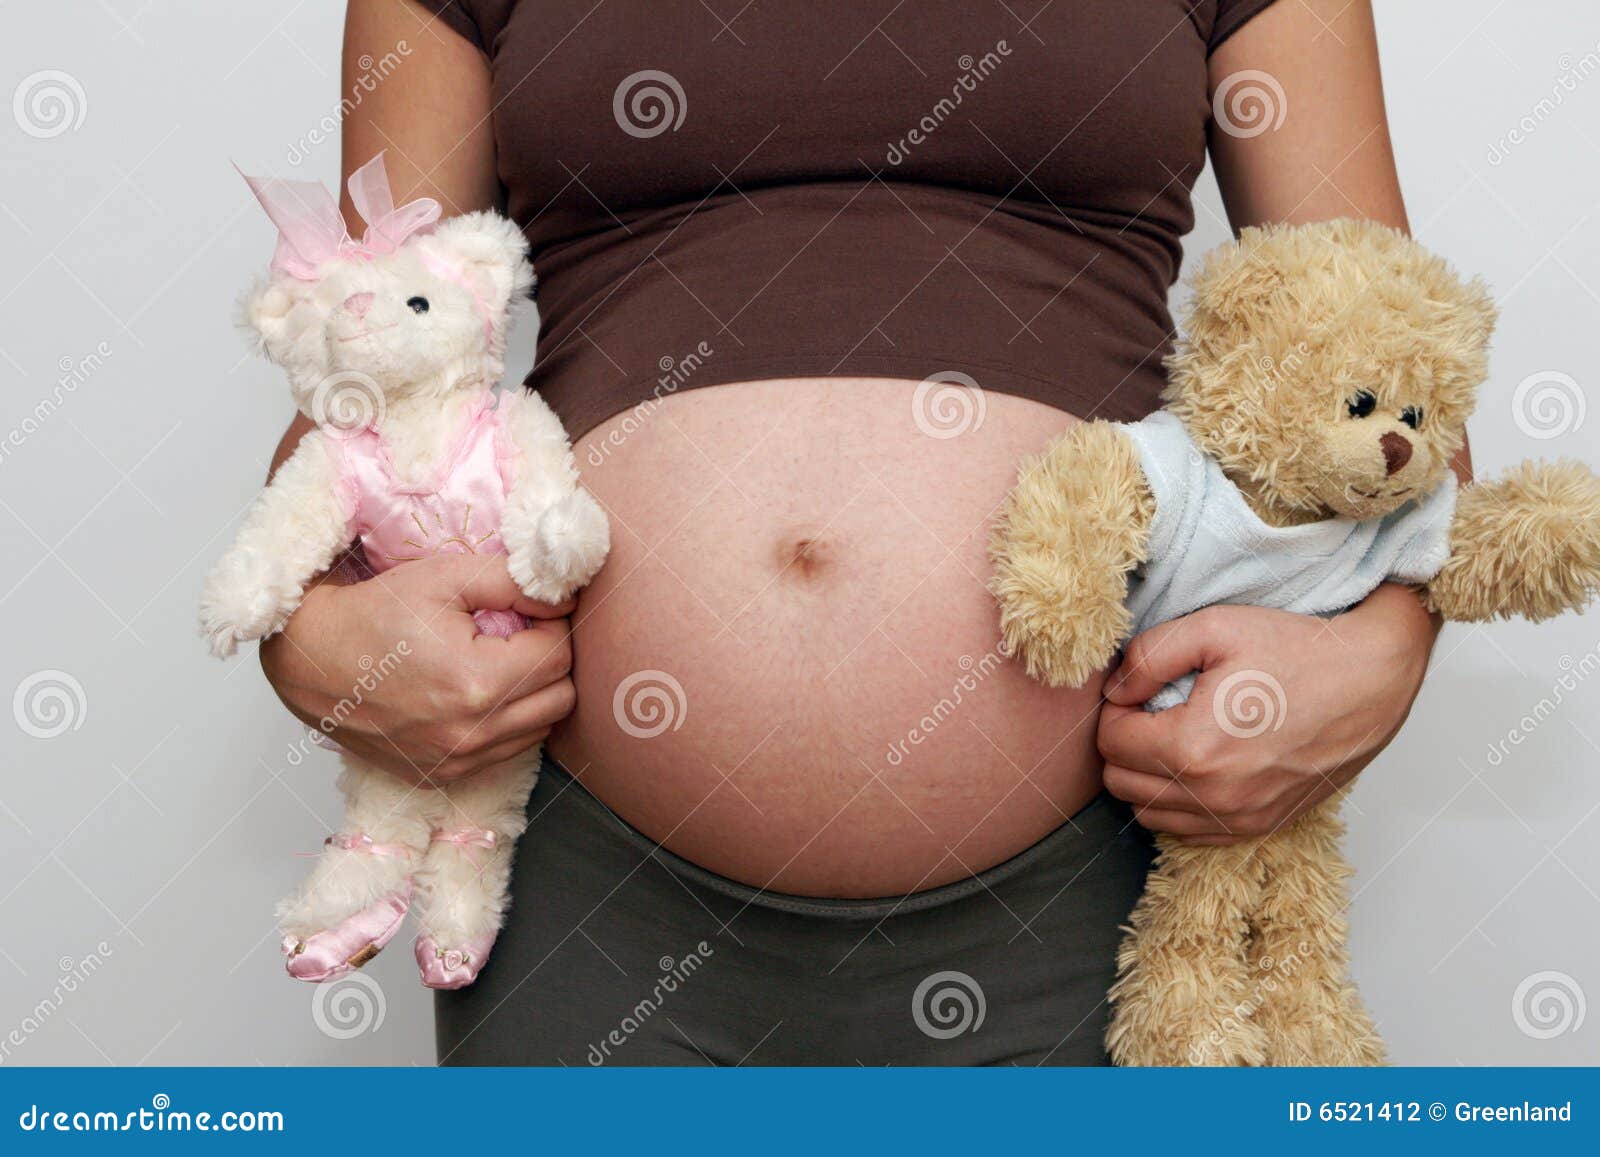 Bellies stuffed girl Stuffedbellylover